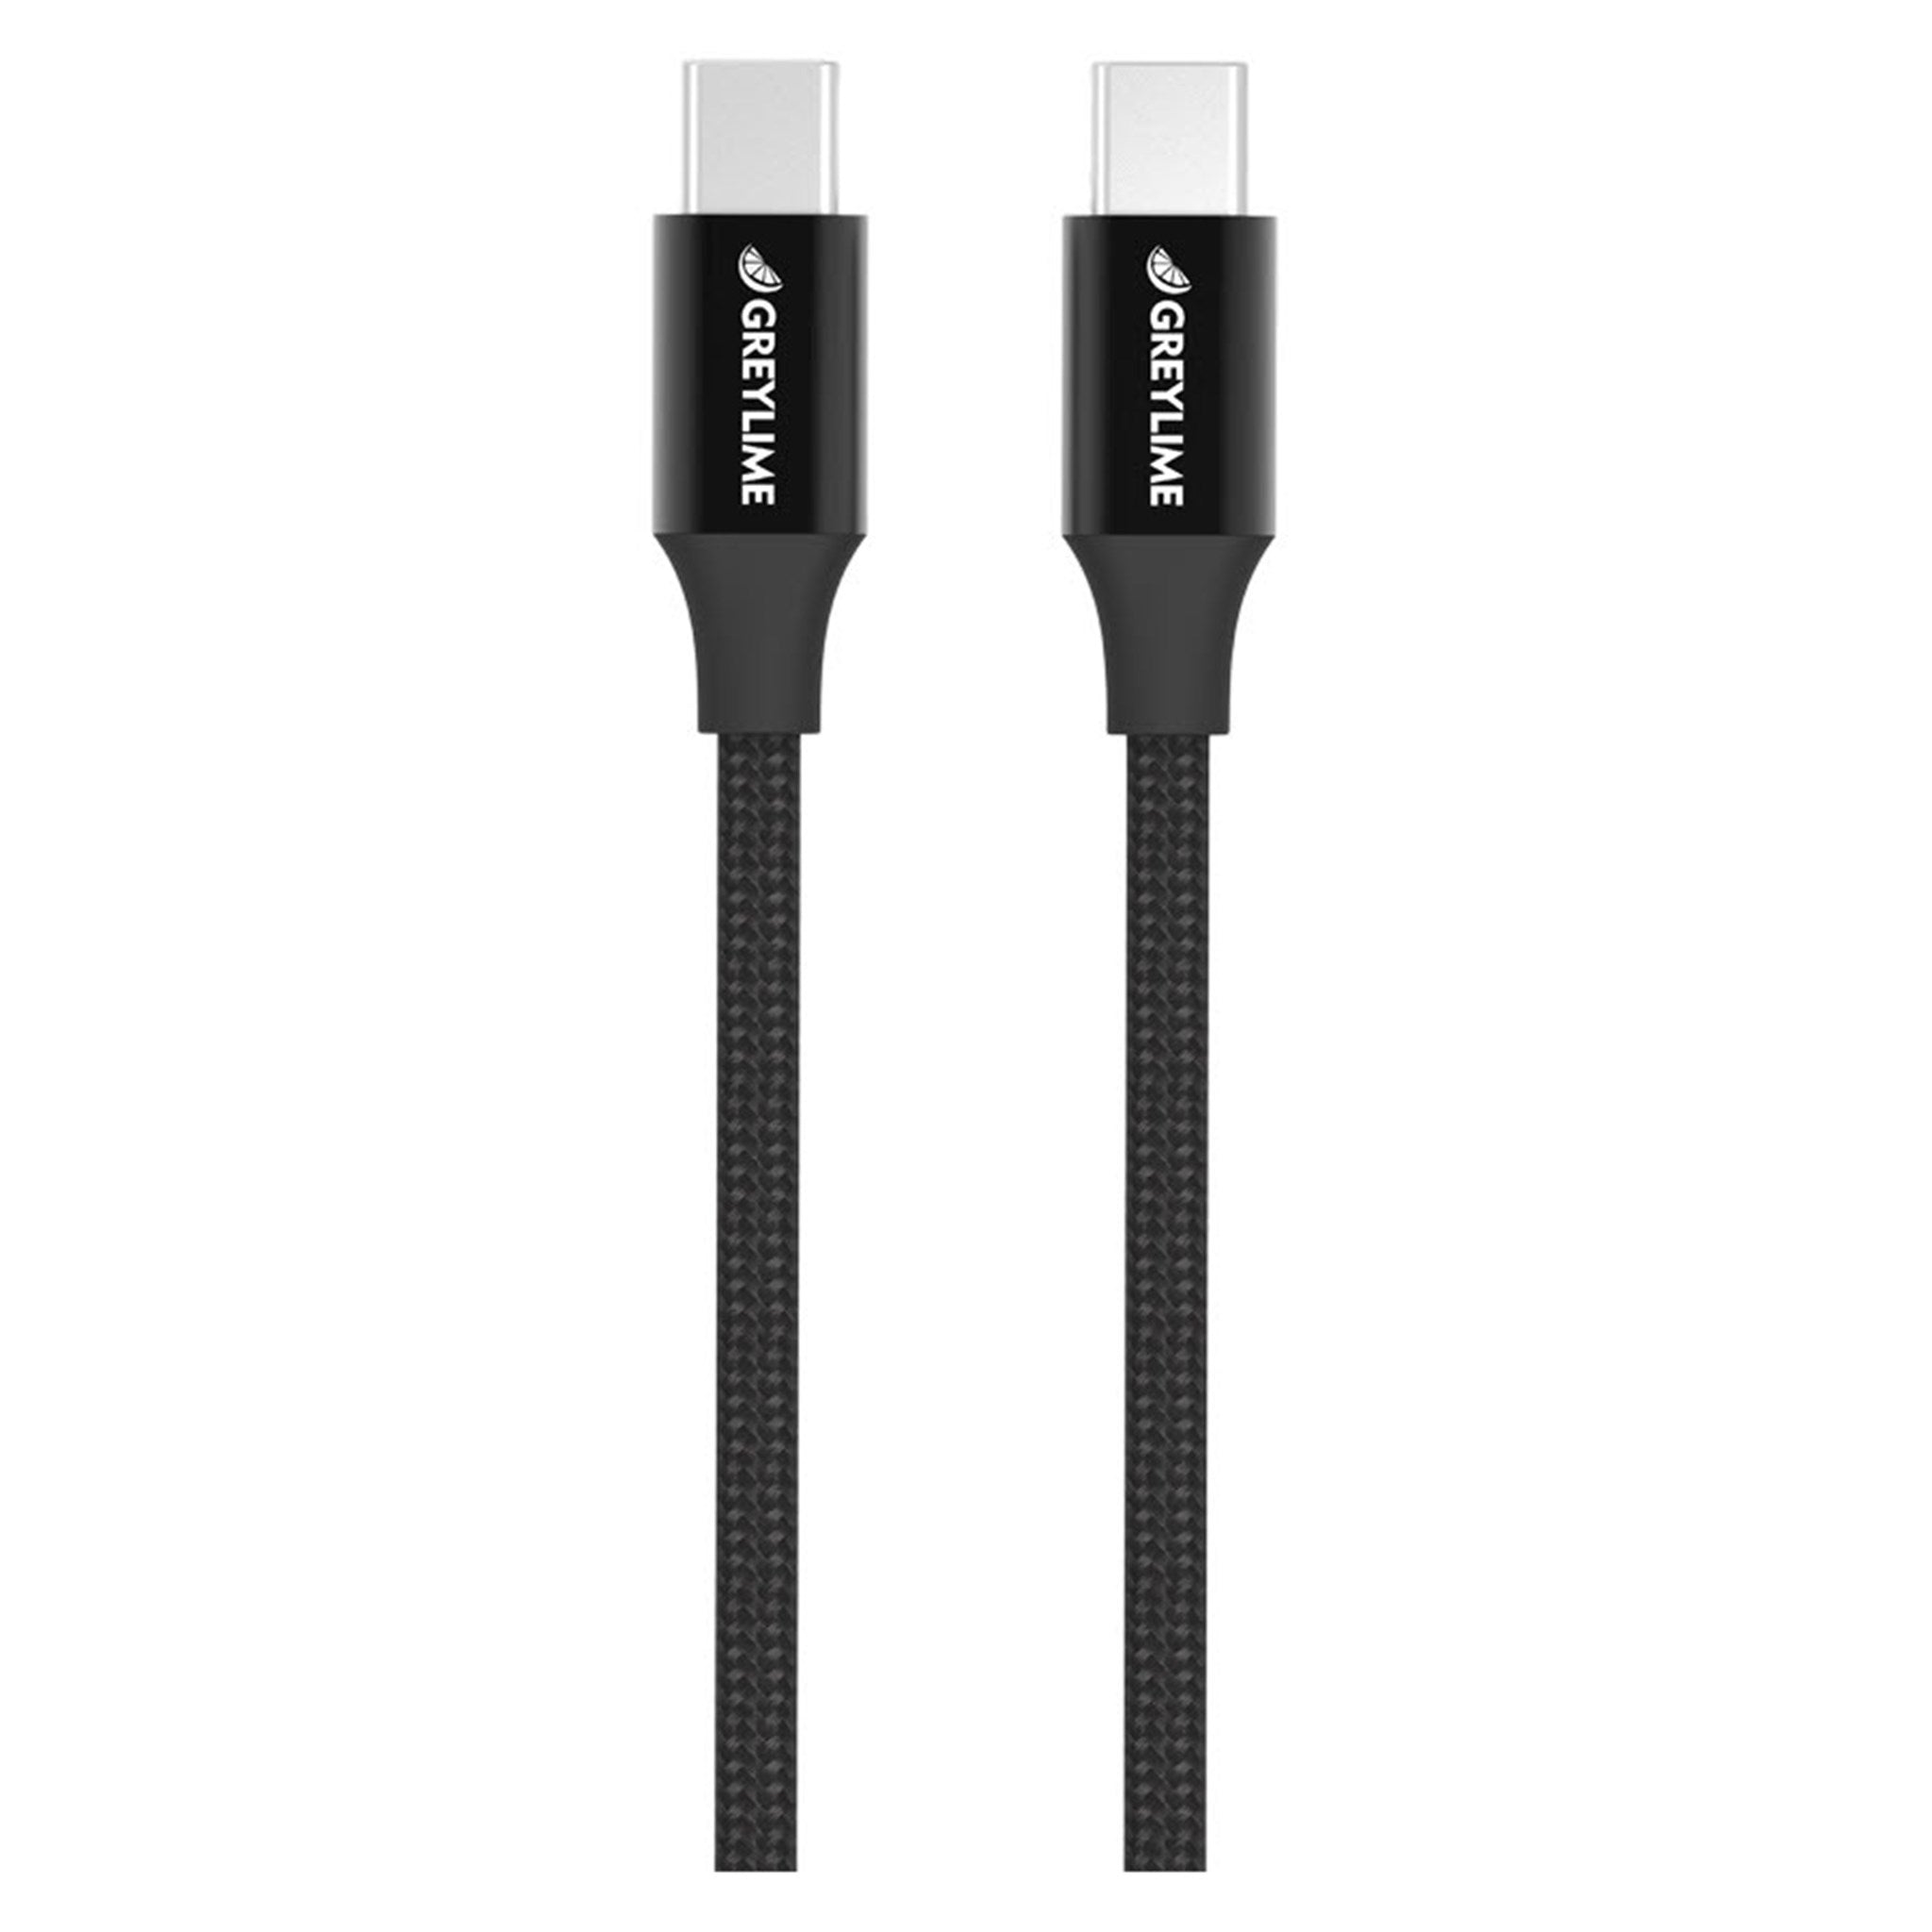 Billede af GreyLime Braided USB-C til USB-C Kabel Sort 2 m hos GreyLime